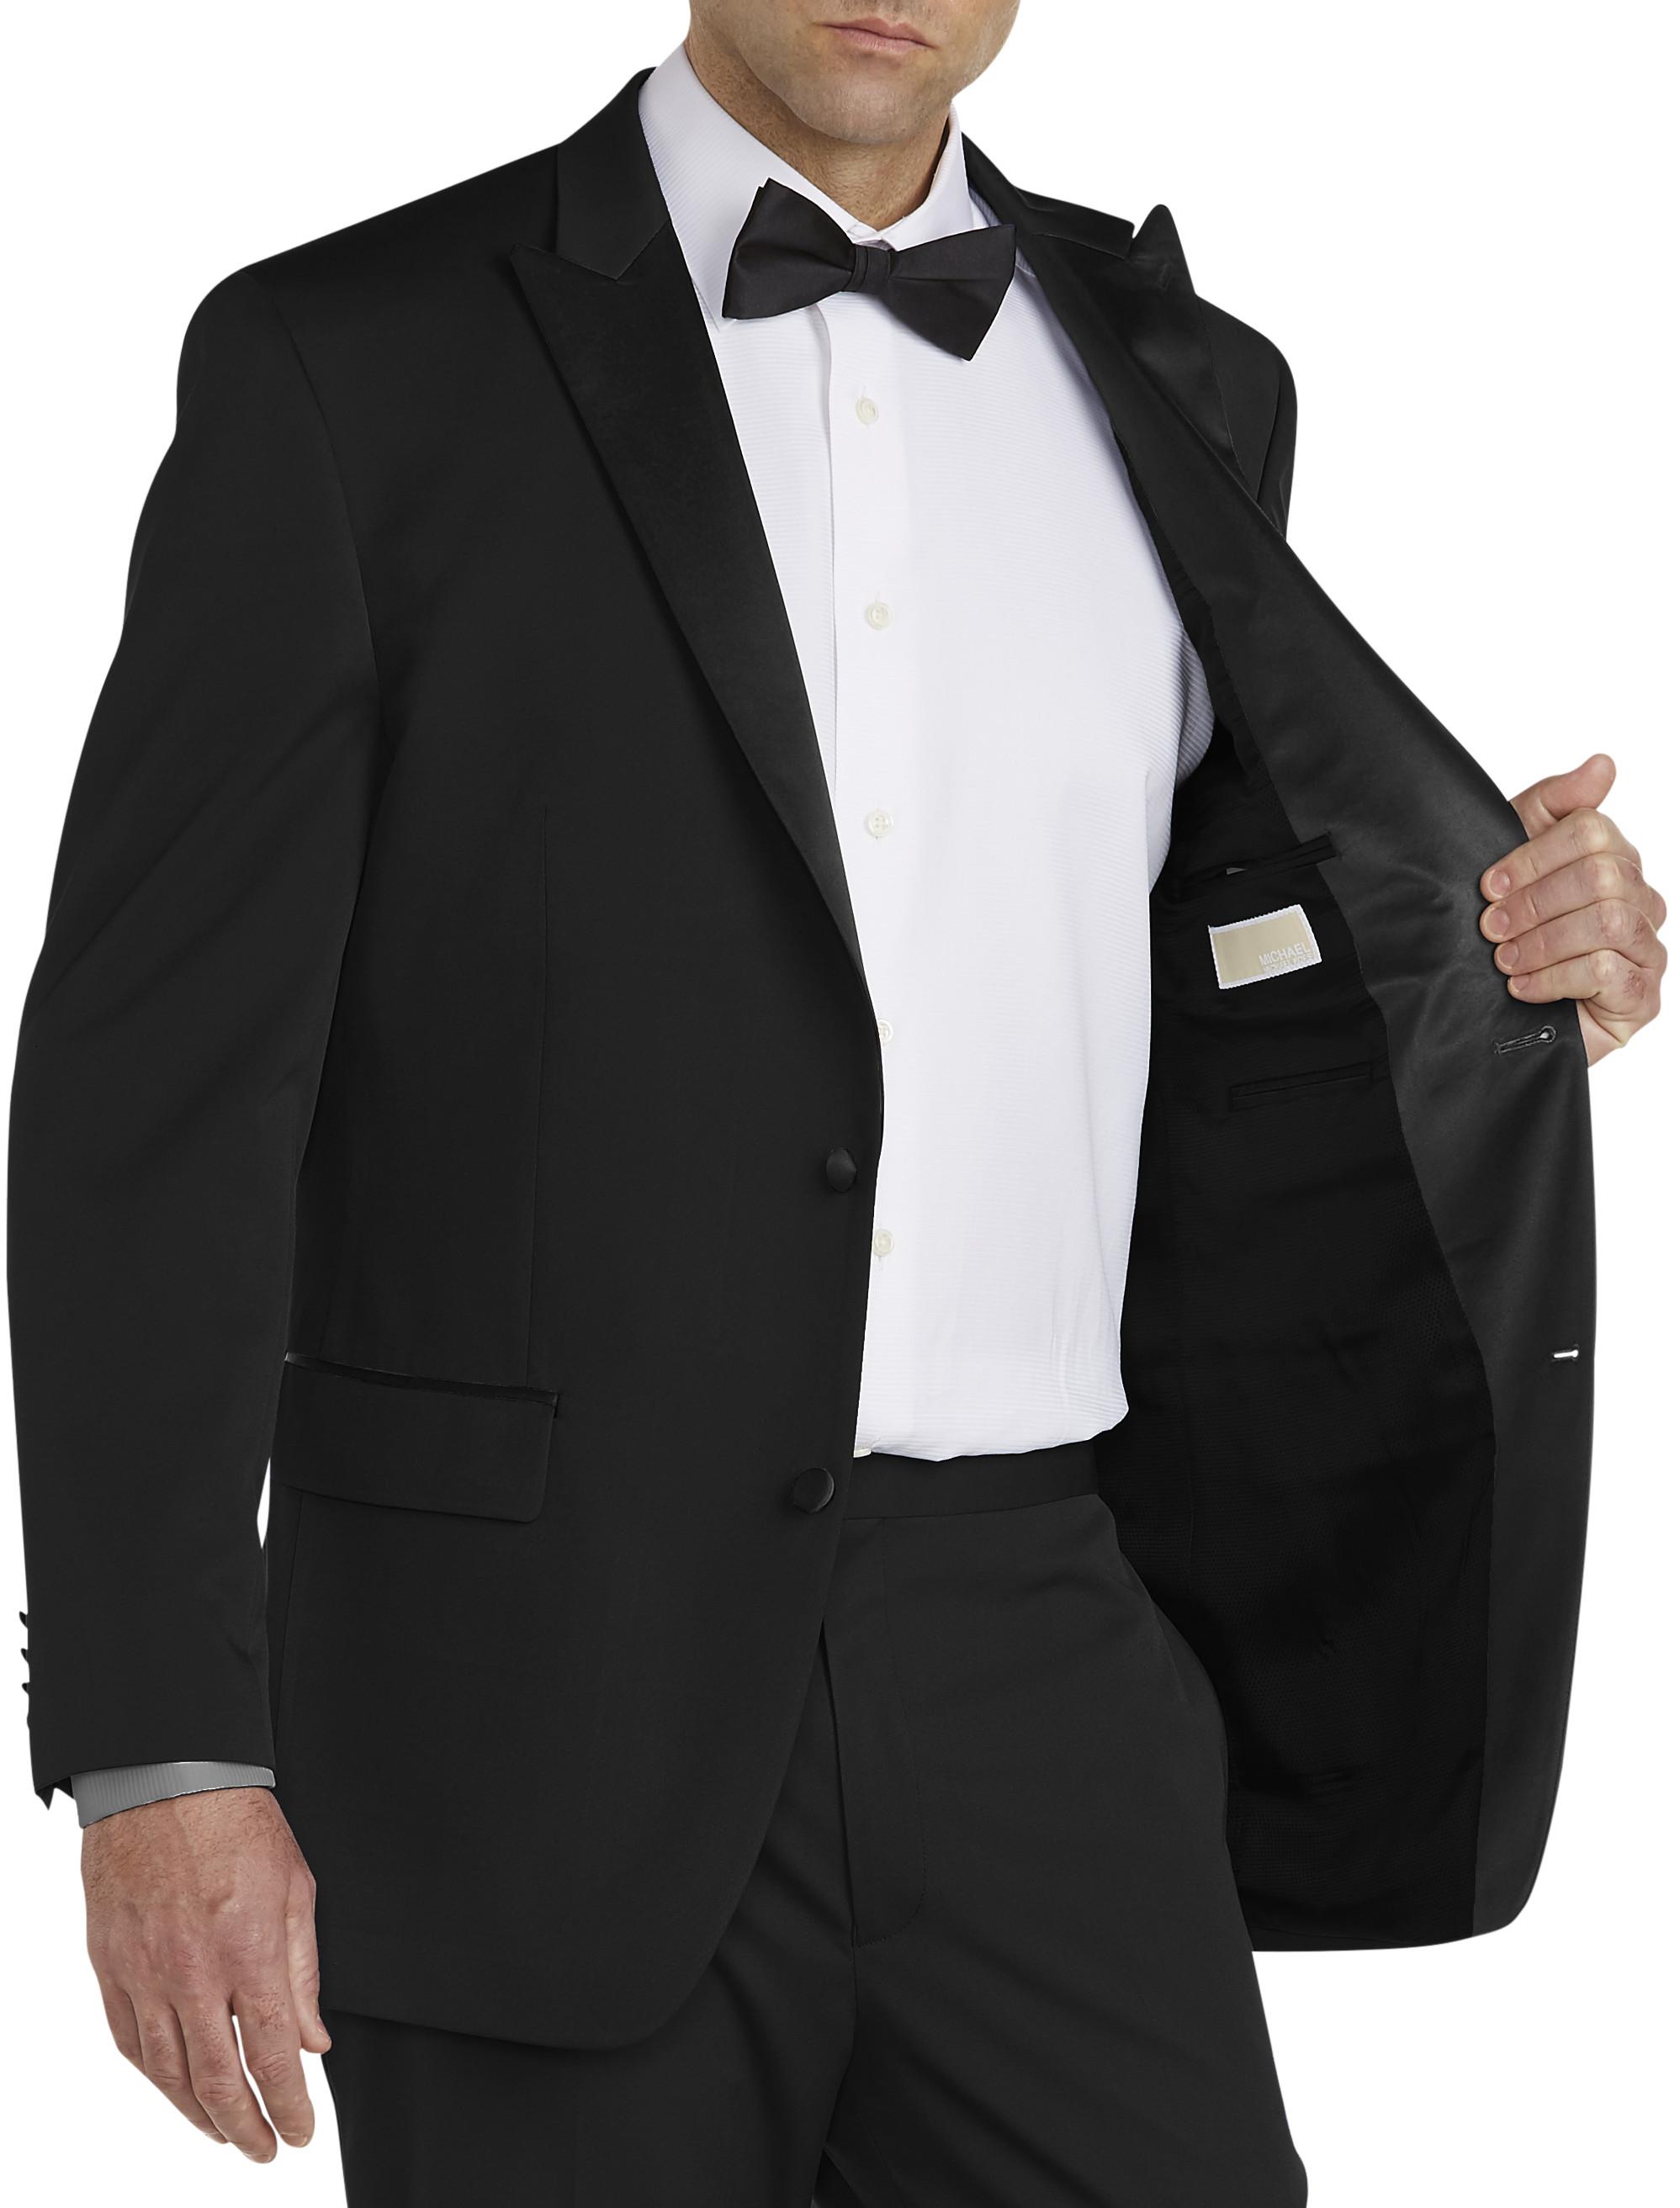 Michael Kors Navy Ultra Slim Fit Tuxedo  Party Shop Emporium